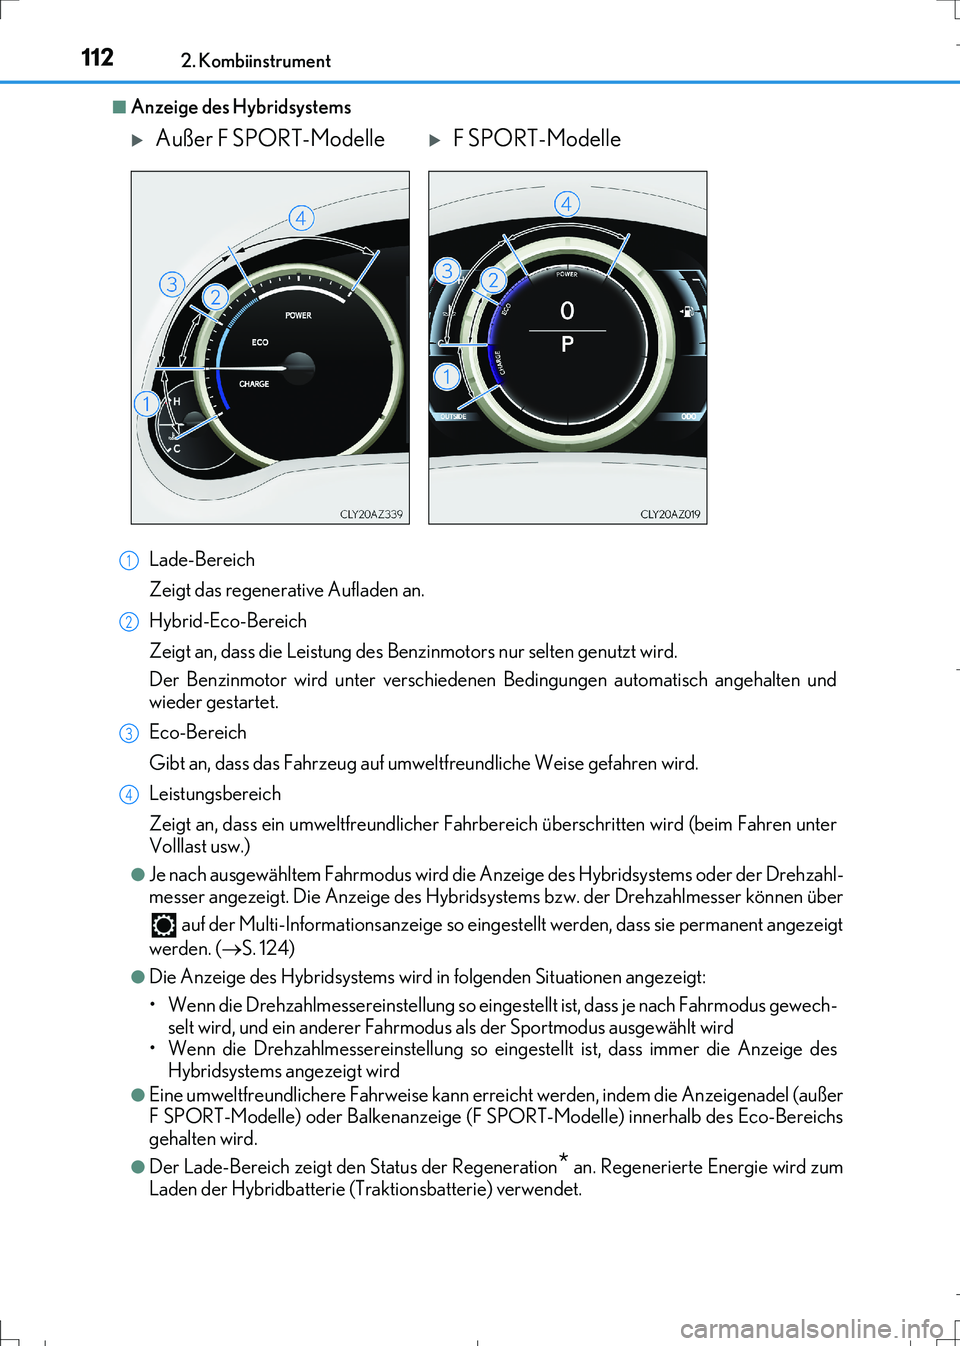 Lexus IS300h 2017  Betriebsanleitung (in German) 1122. Kombiinstrument
IS300h_EM(OM99K28M)
■Anzeige des Hybridsystems
Lade-Bereich
Zeigt das regenerative Aufladen an.
Hybrid-Eco-Bereich
Zeigt an, dass die Leistung des Benzinmotors nur selten genut